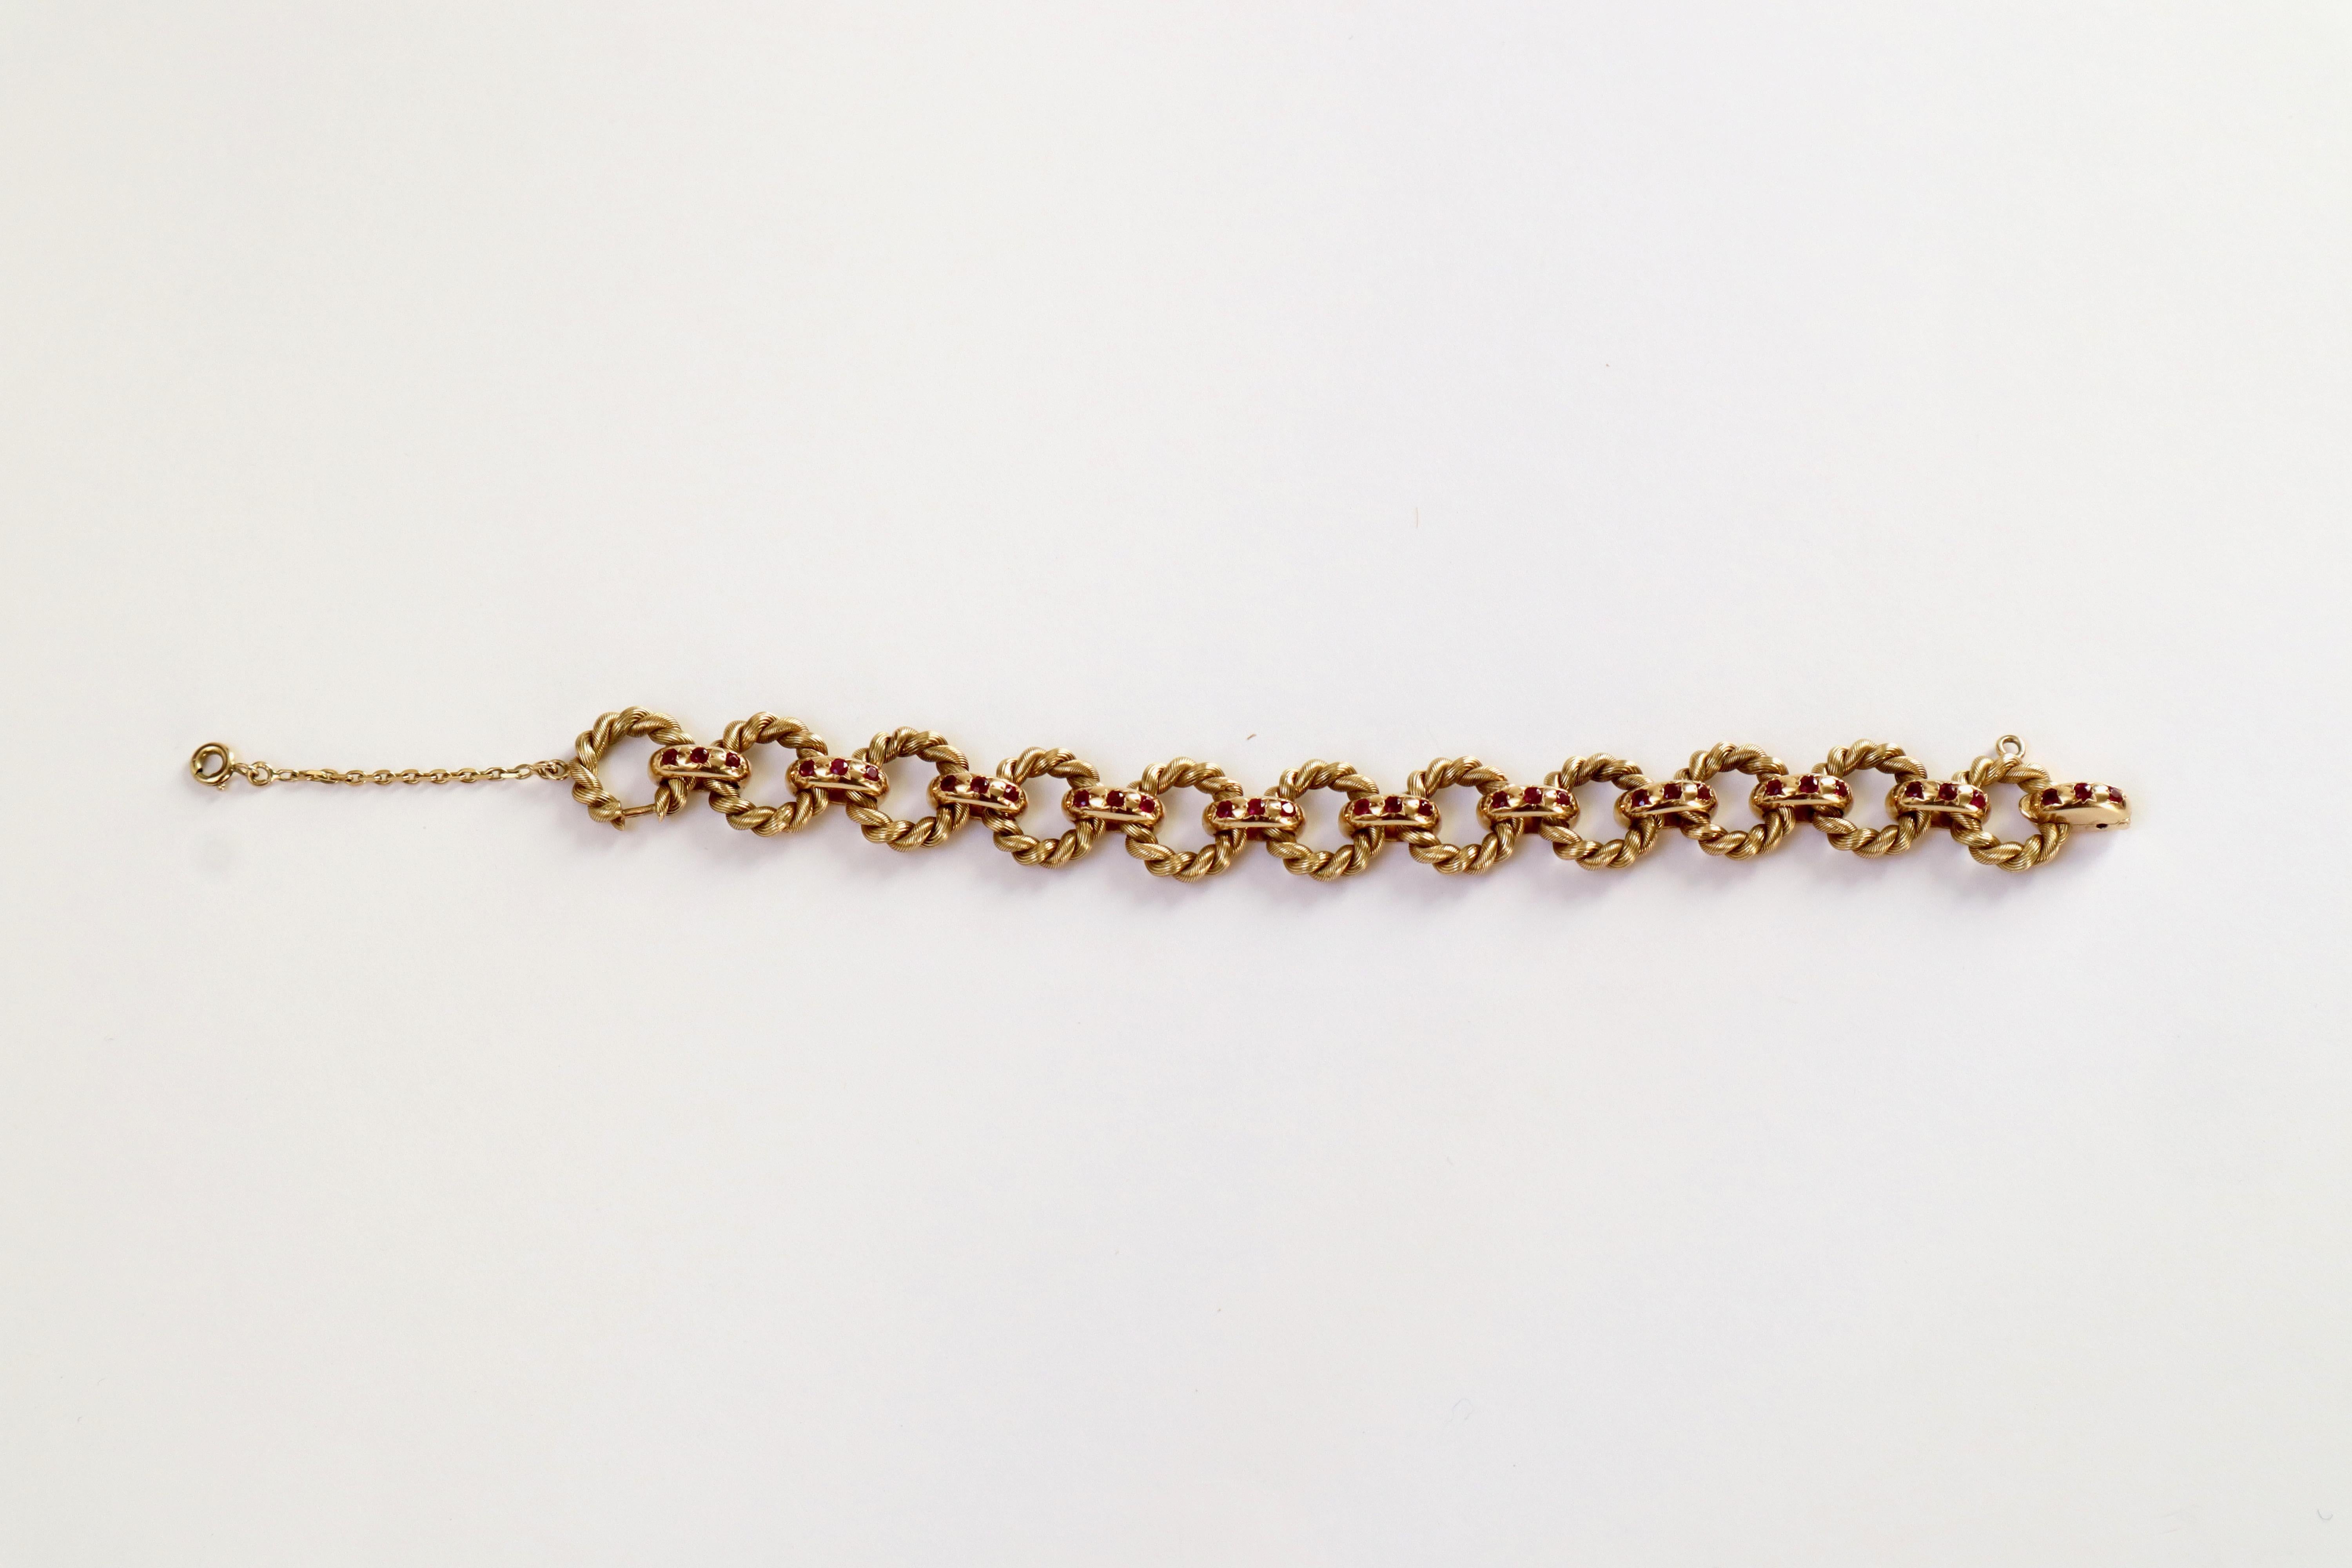 Bracelet Van Cleef & Arpels en or jaune 18 carats et rubis avec des anneaux torsadés
Bracelet composé de 11 anneaux torsadés retenus par 11 maillons sertis chacun de 3 rubis
Signé VCA et numéroté.
Fermeture du lien à l'extrémité s'ouvrant avec un